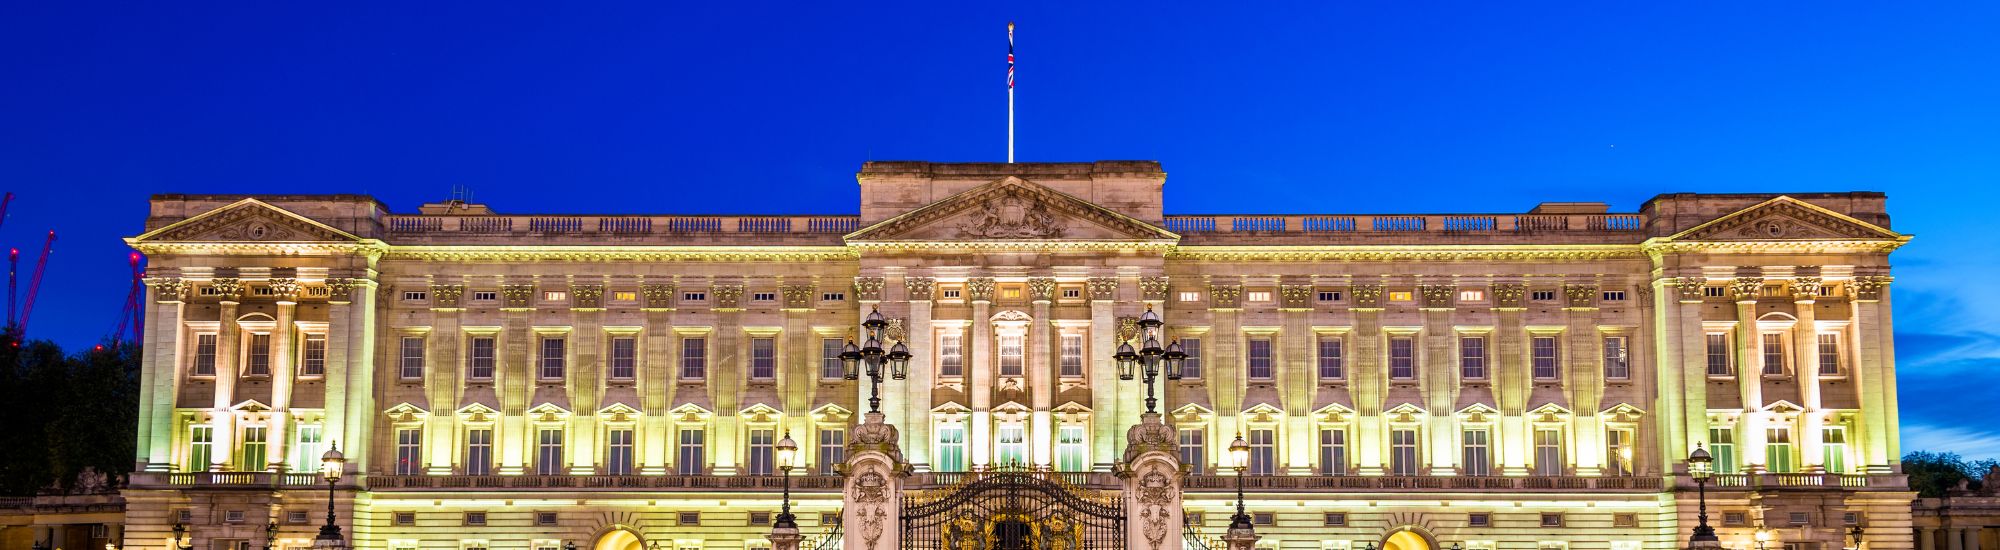 tourhub | Just Go Holidays | London & Buckingham Palace 